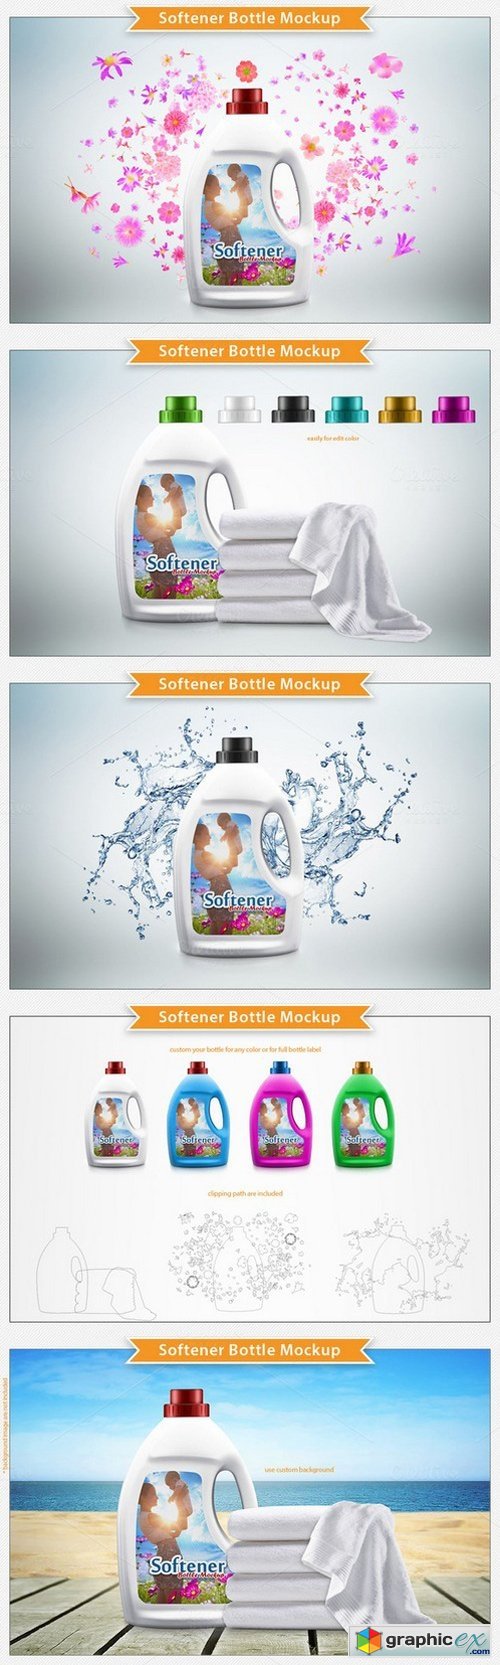 Softener Bottle Mockup